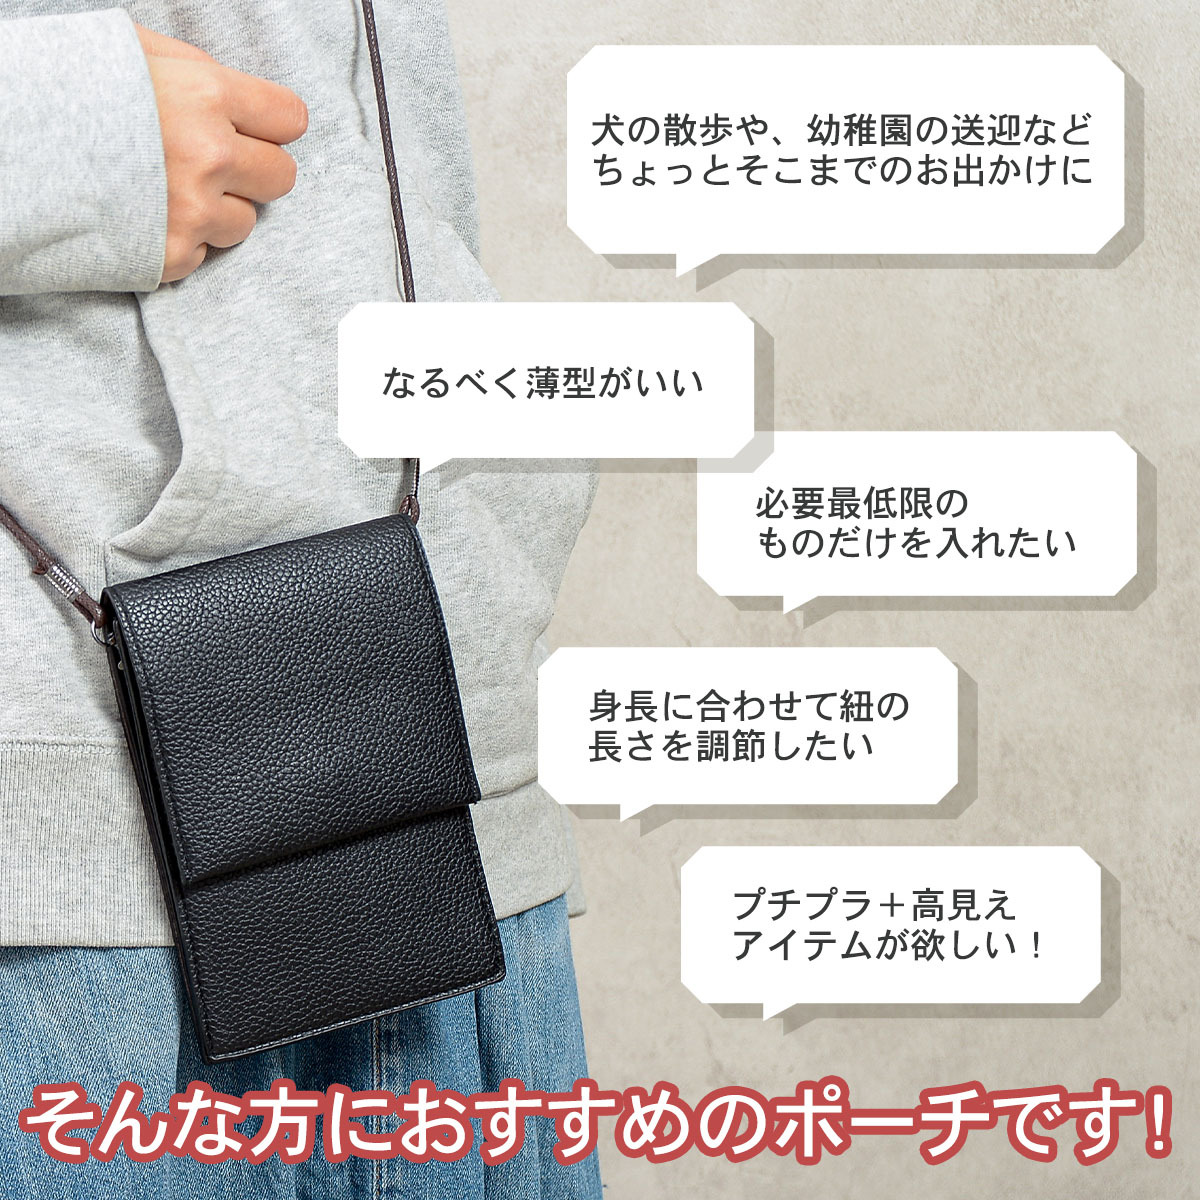  искусственная кожа тонкий плечо сумка смартфон сумка небольшая сумочка мобильный inserting простой легкий плечо .. наклонный .. симпатичный модный симпатичный 